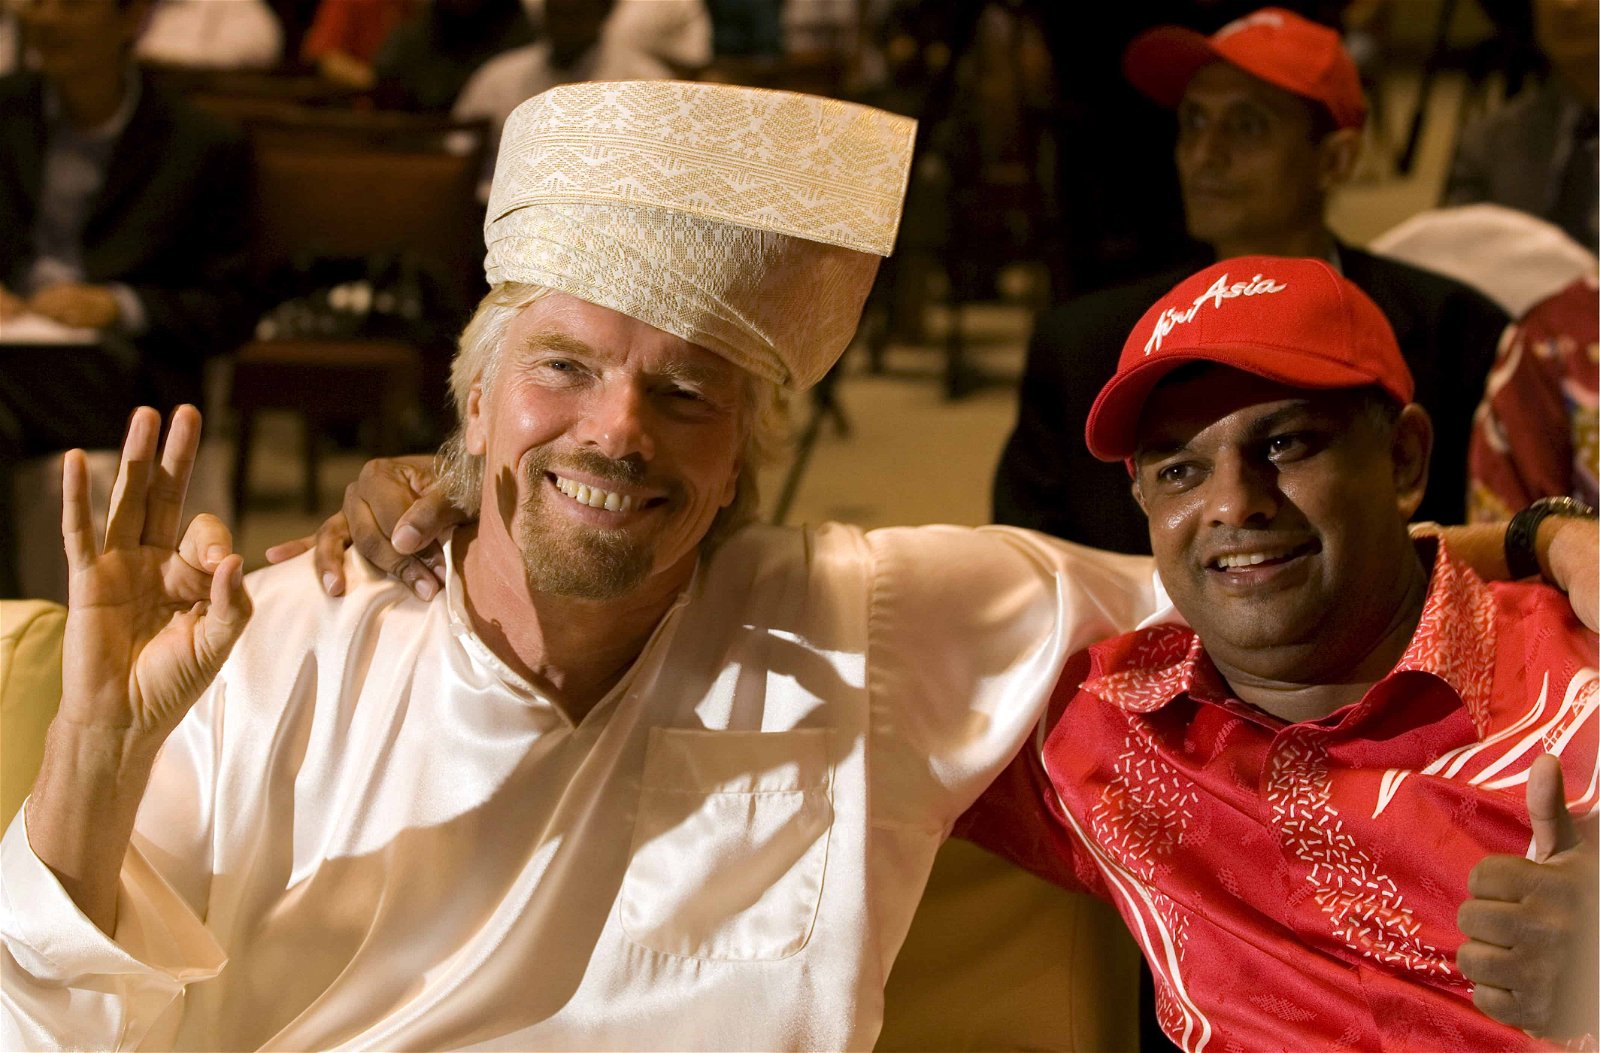 Richard Branson in lokale klederdracht naast een zwarte man in een rood pak.